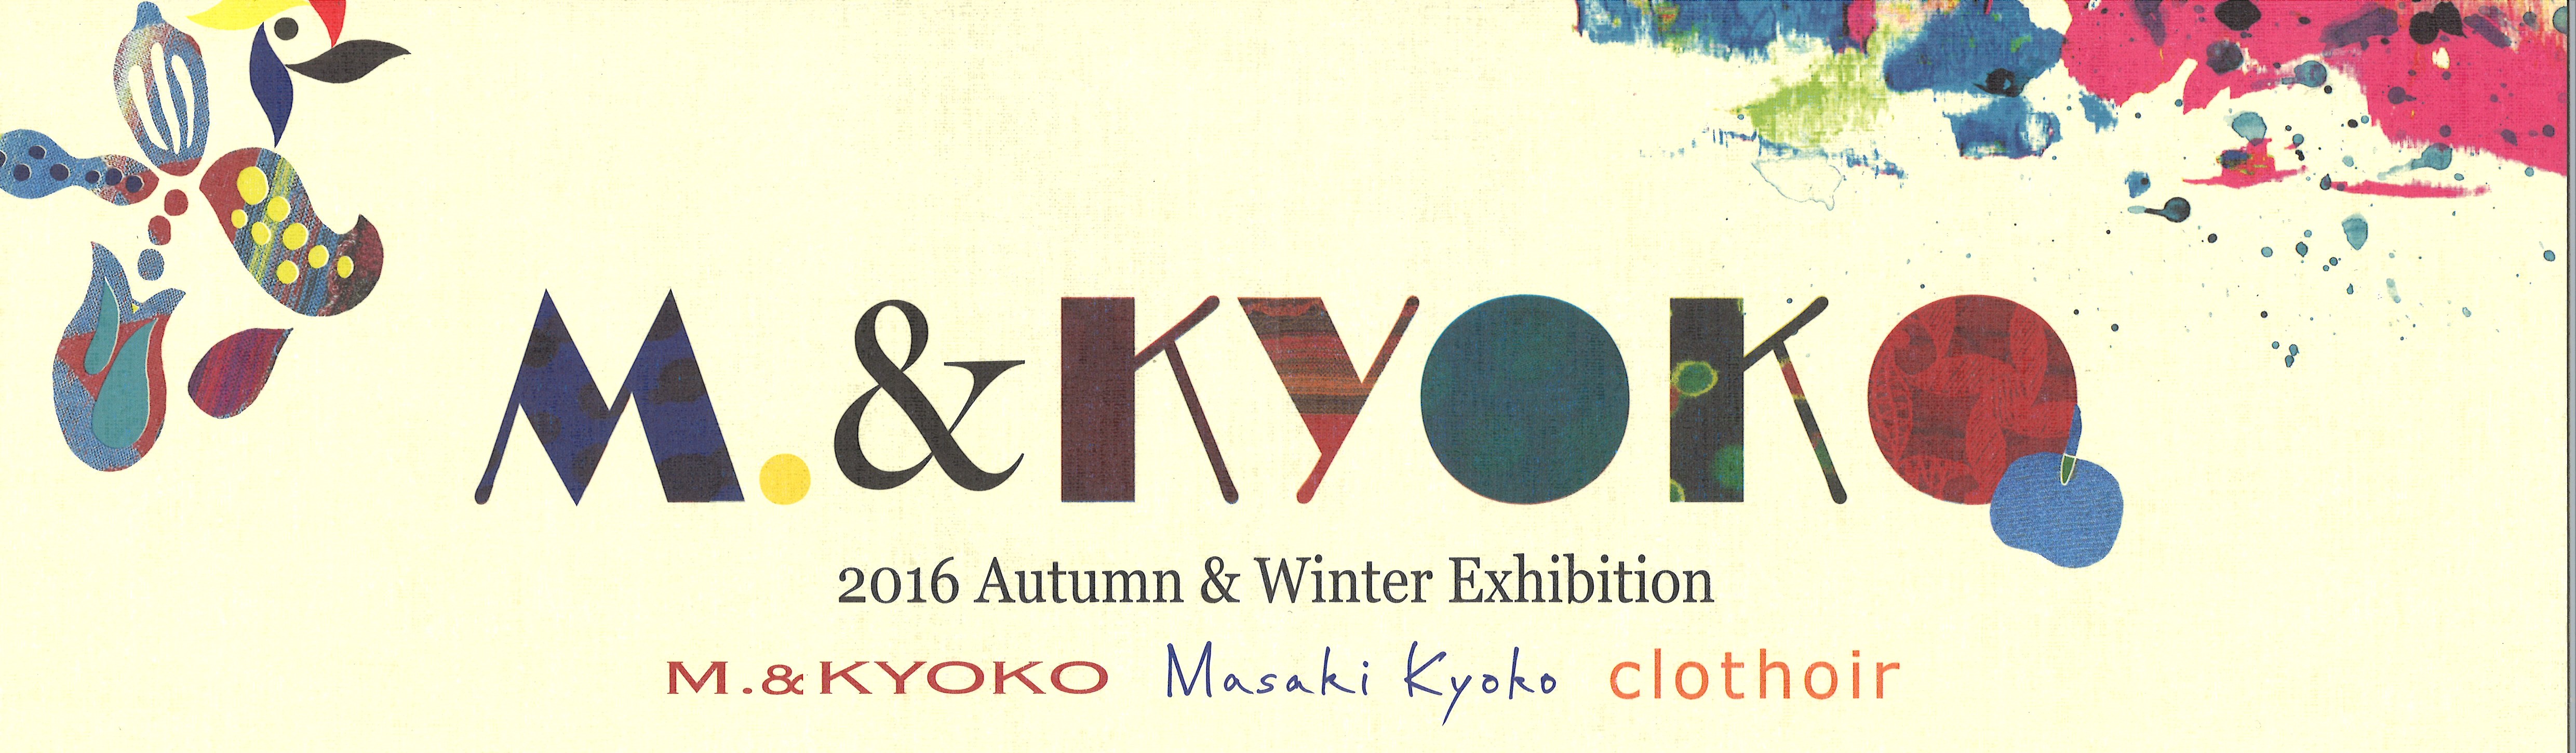 2016 Autumn & Winter Exhibition展示会のお知らせの写真